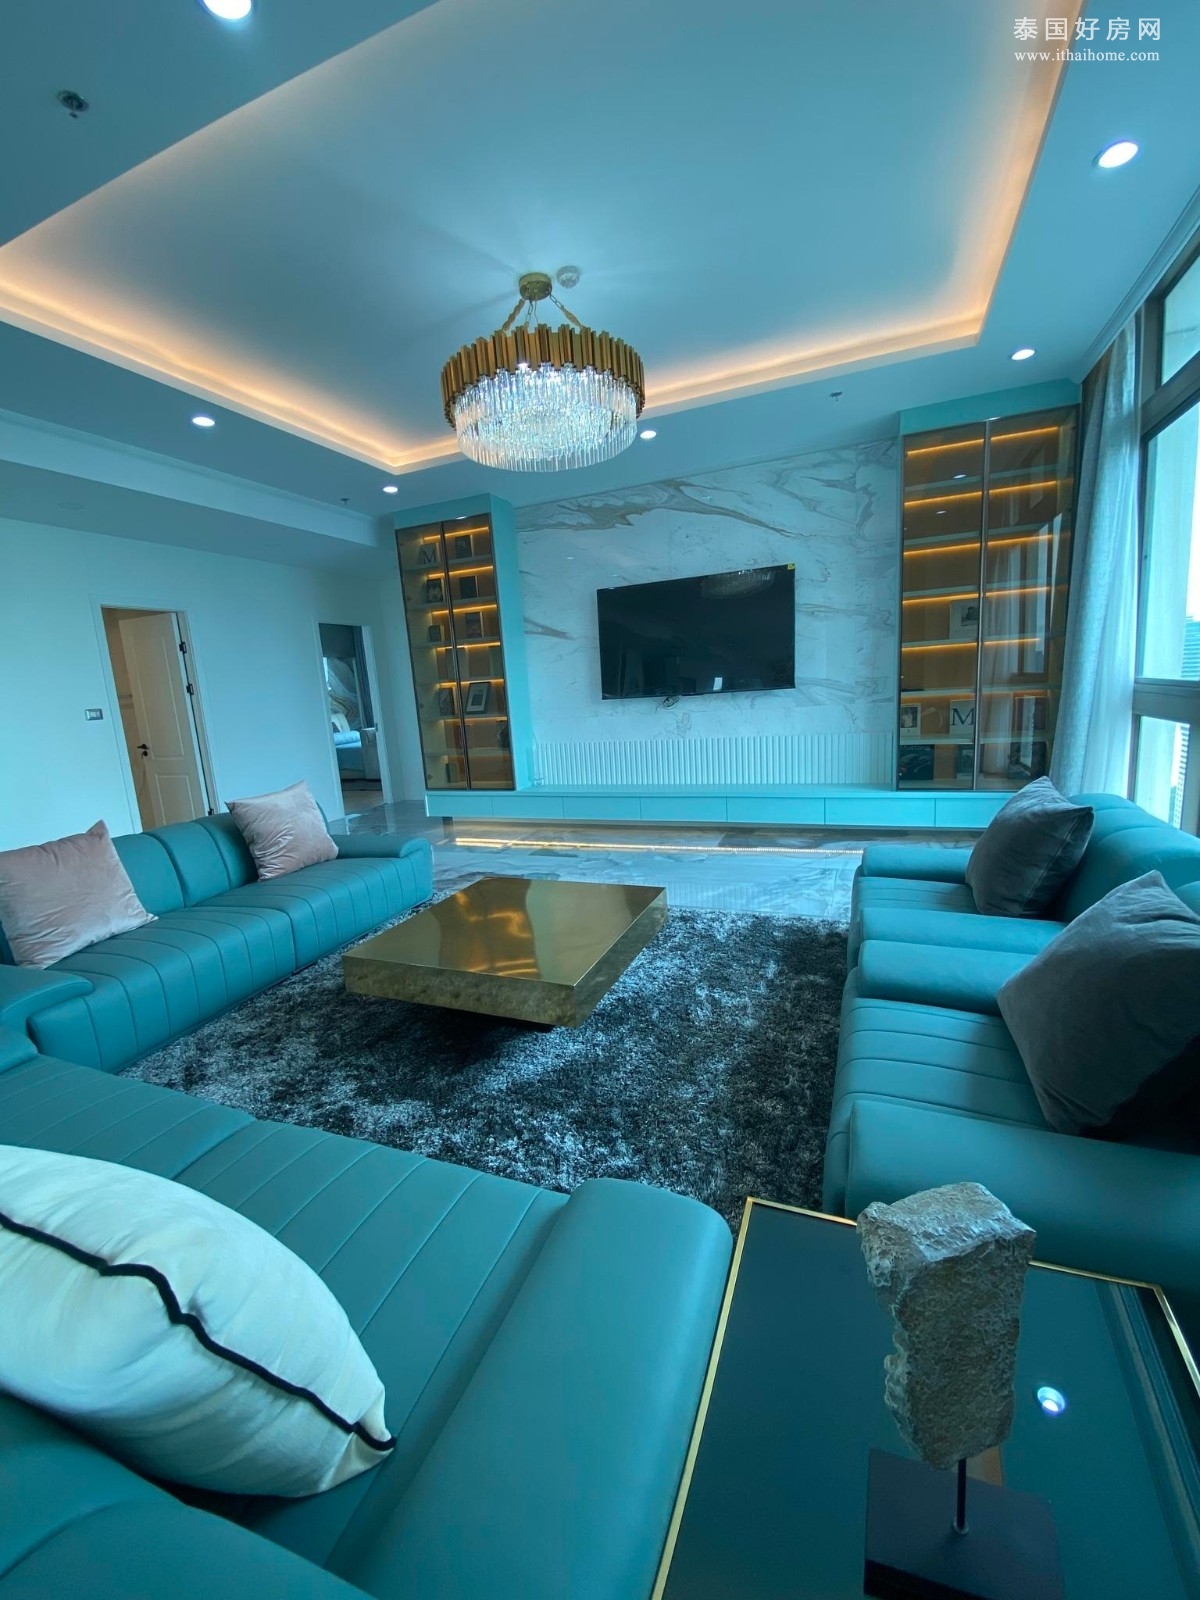 Supalai Oriental Sukhumvit 39 公寓出售 顶层复式3卧355平米 7800万泰铢